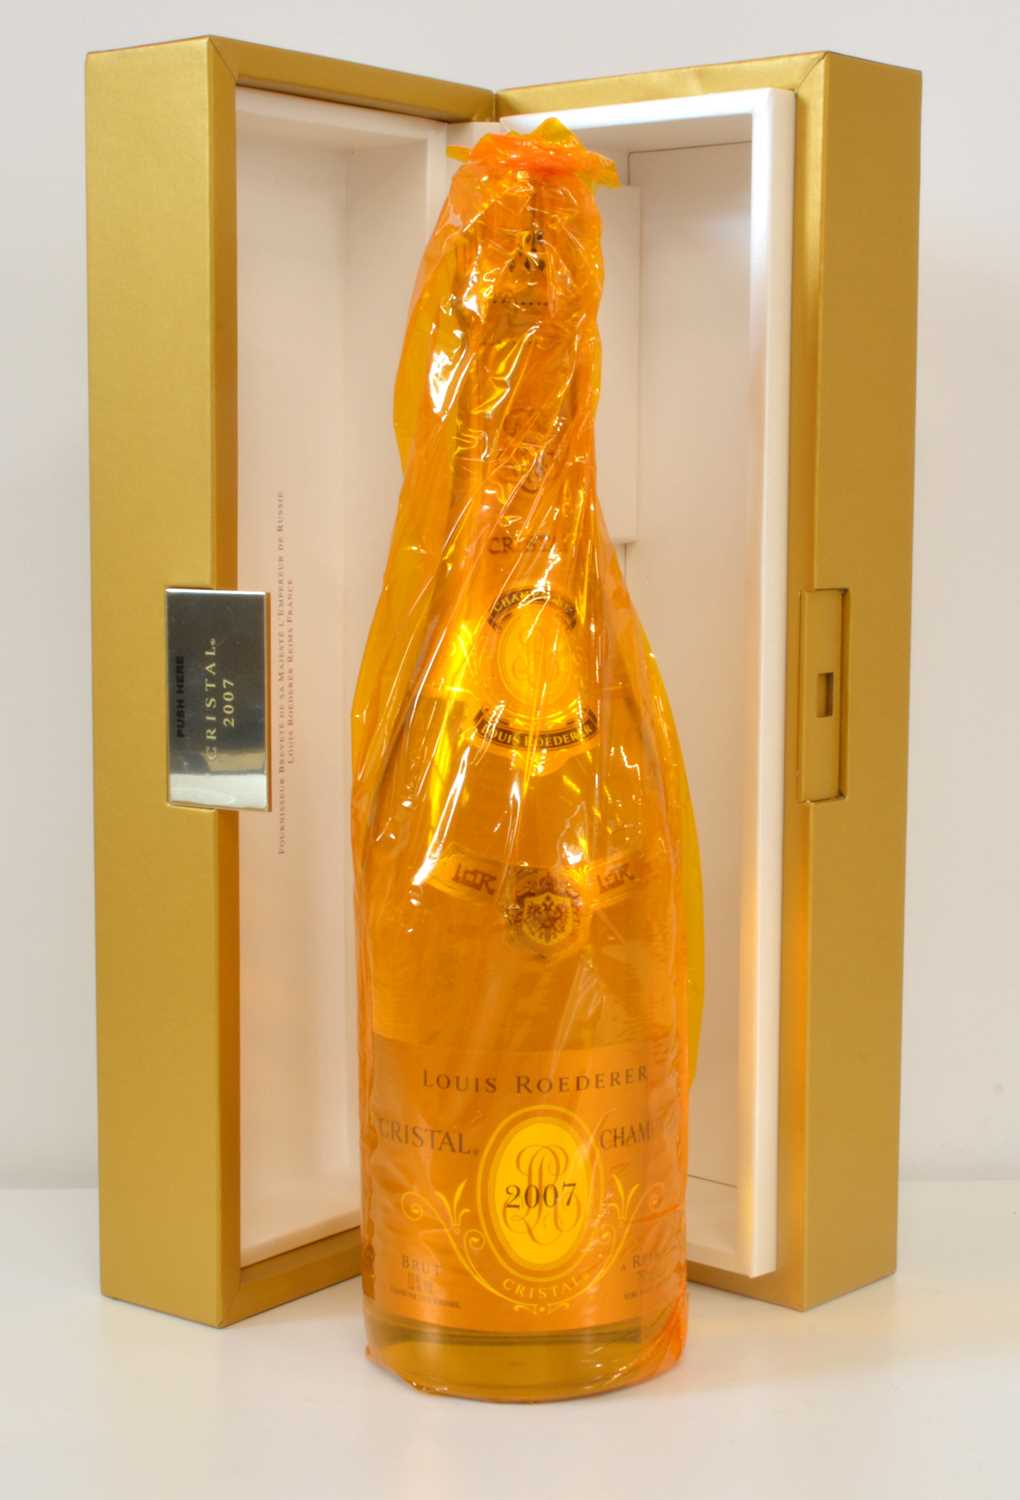 Lot 59 - Champagne Louis Roederer Cristal Vintage 2007